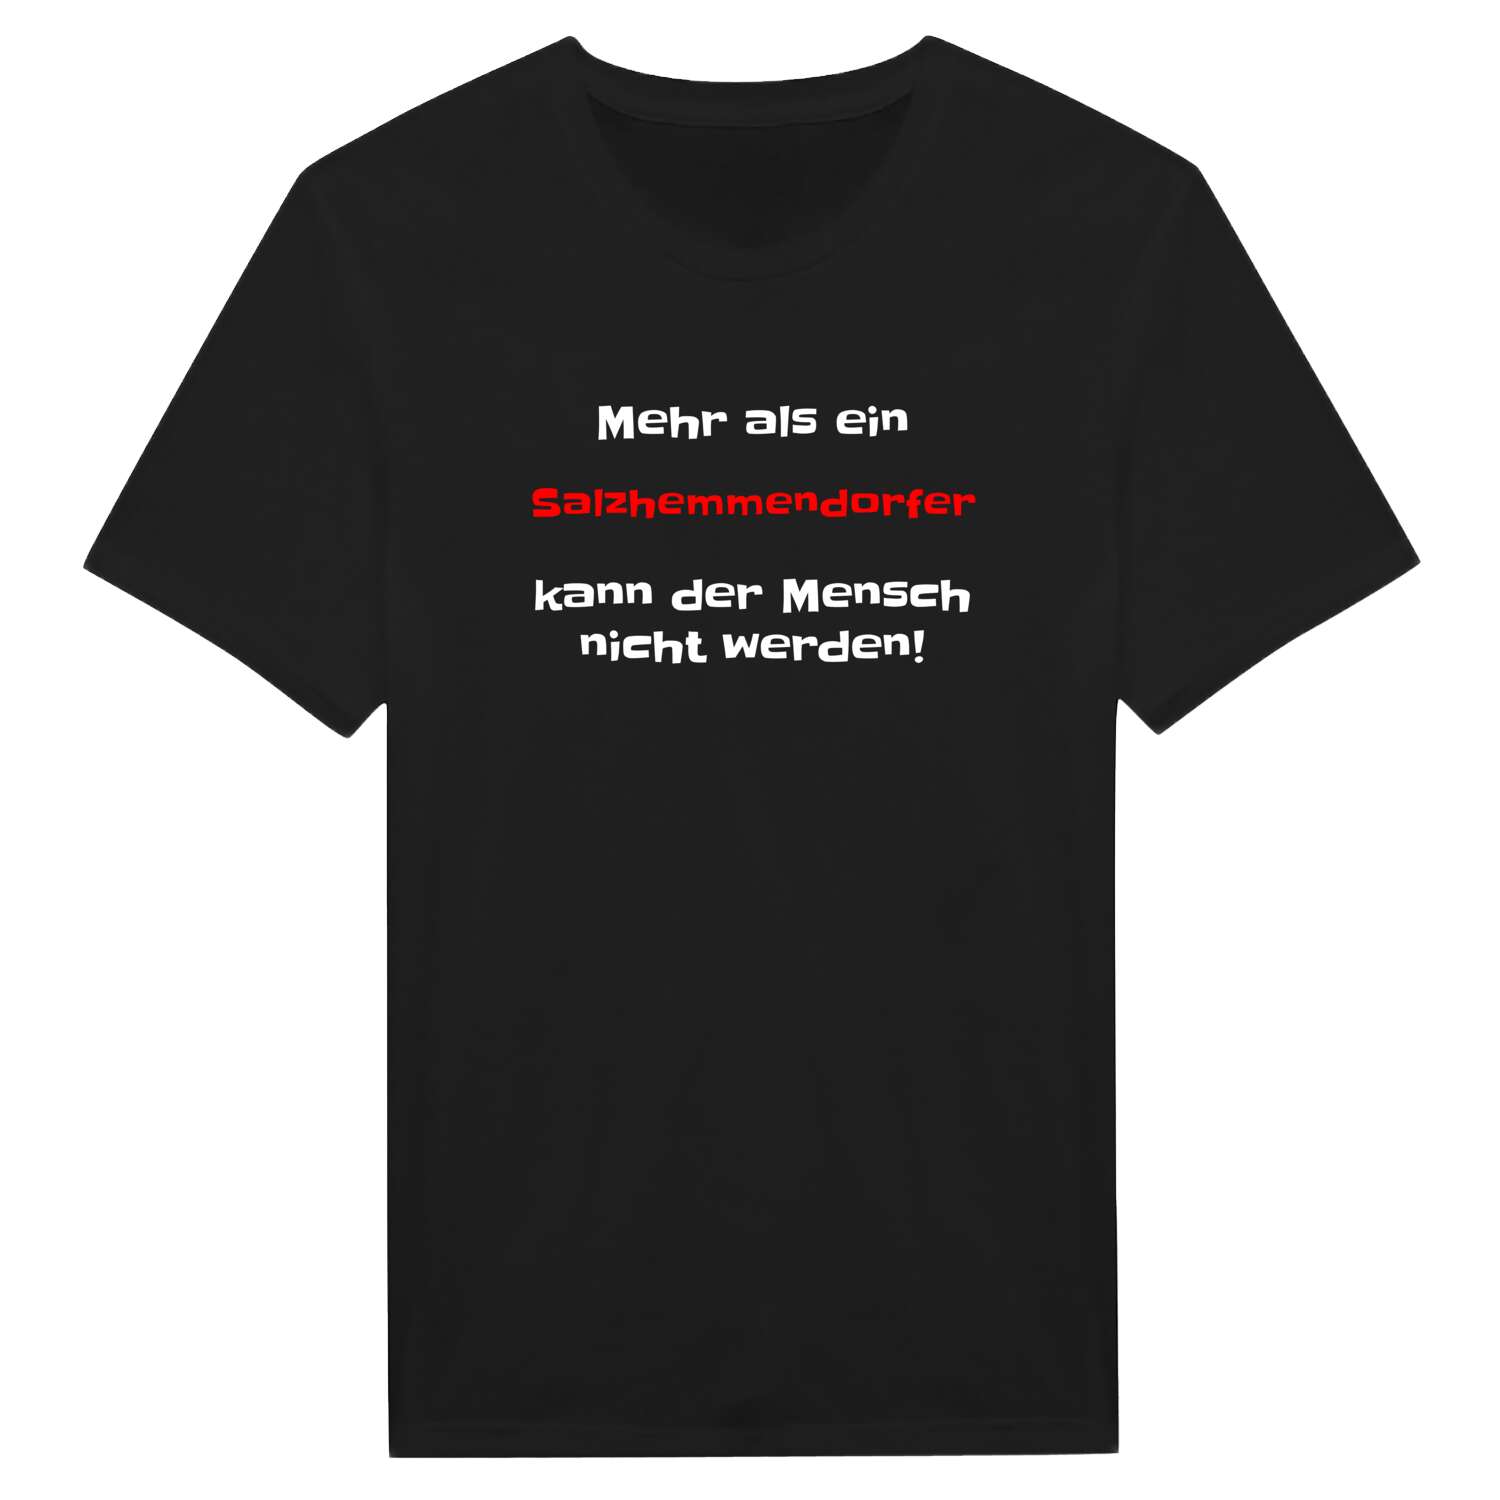 Salzhemmendorf T-Shirt »Mehr als ein«